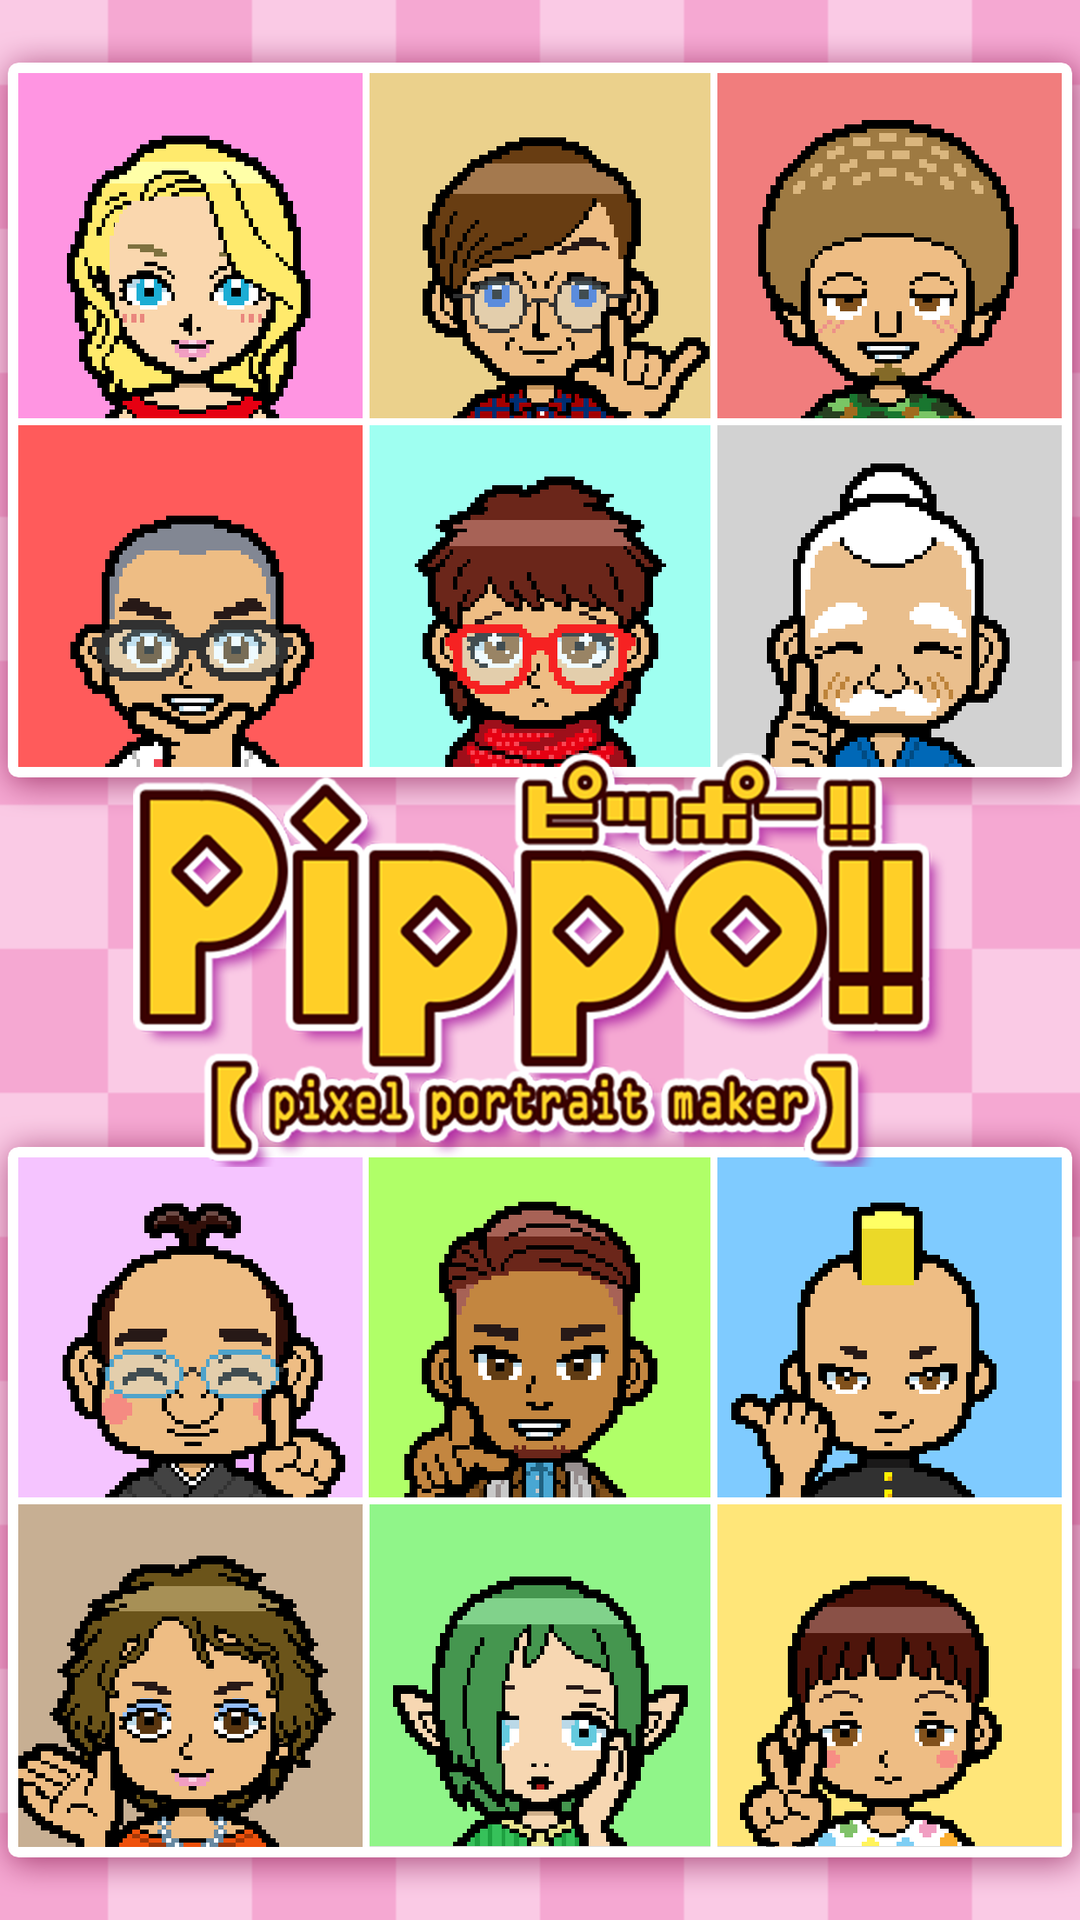 ドット絵にがお絵アプリ Pippo ピッポー フリーランスドッターのブログ